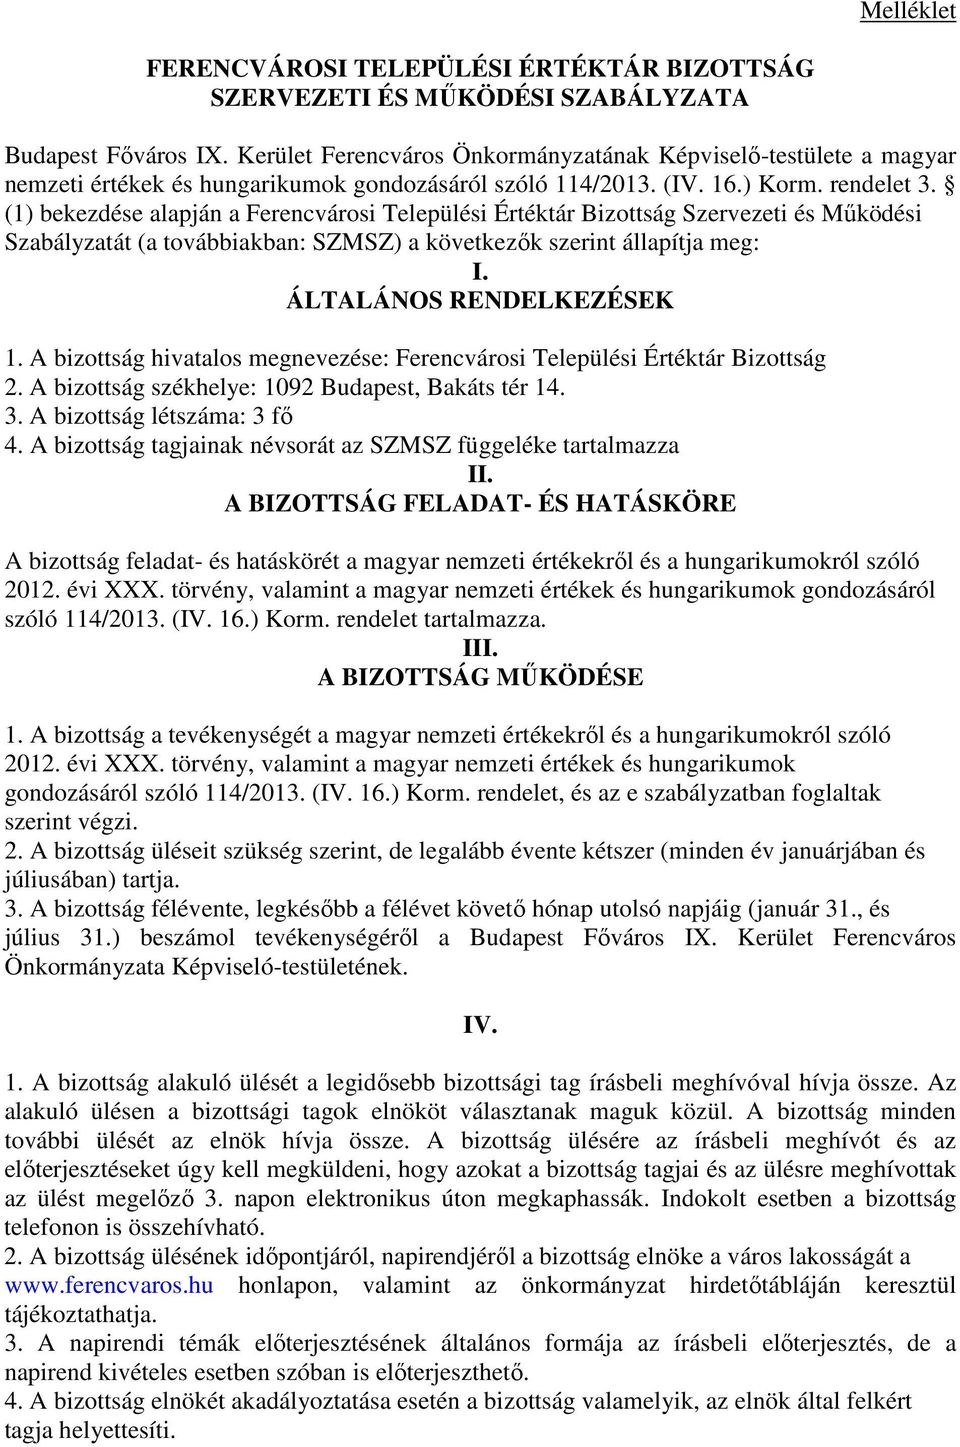 (1) bekezdése alapján a Ferencvárosi Települési Értéktár Bizottság Szervezeti és Működési Szabályzatát (a továbbiakban: SZMSZ) a következők szerint állapítja meg: I. ÁLTALÁNOS RENDELKEZÉSEK 1.